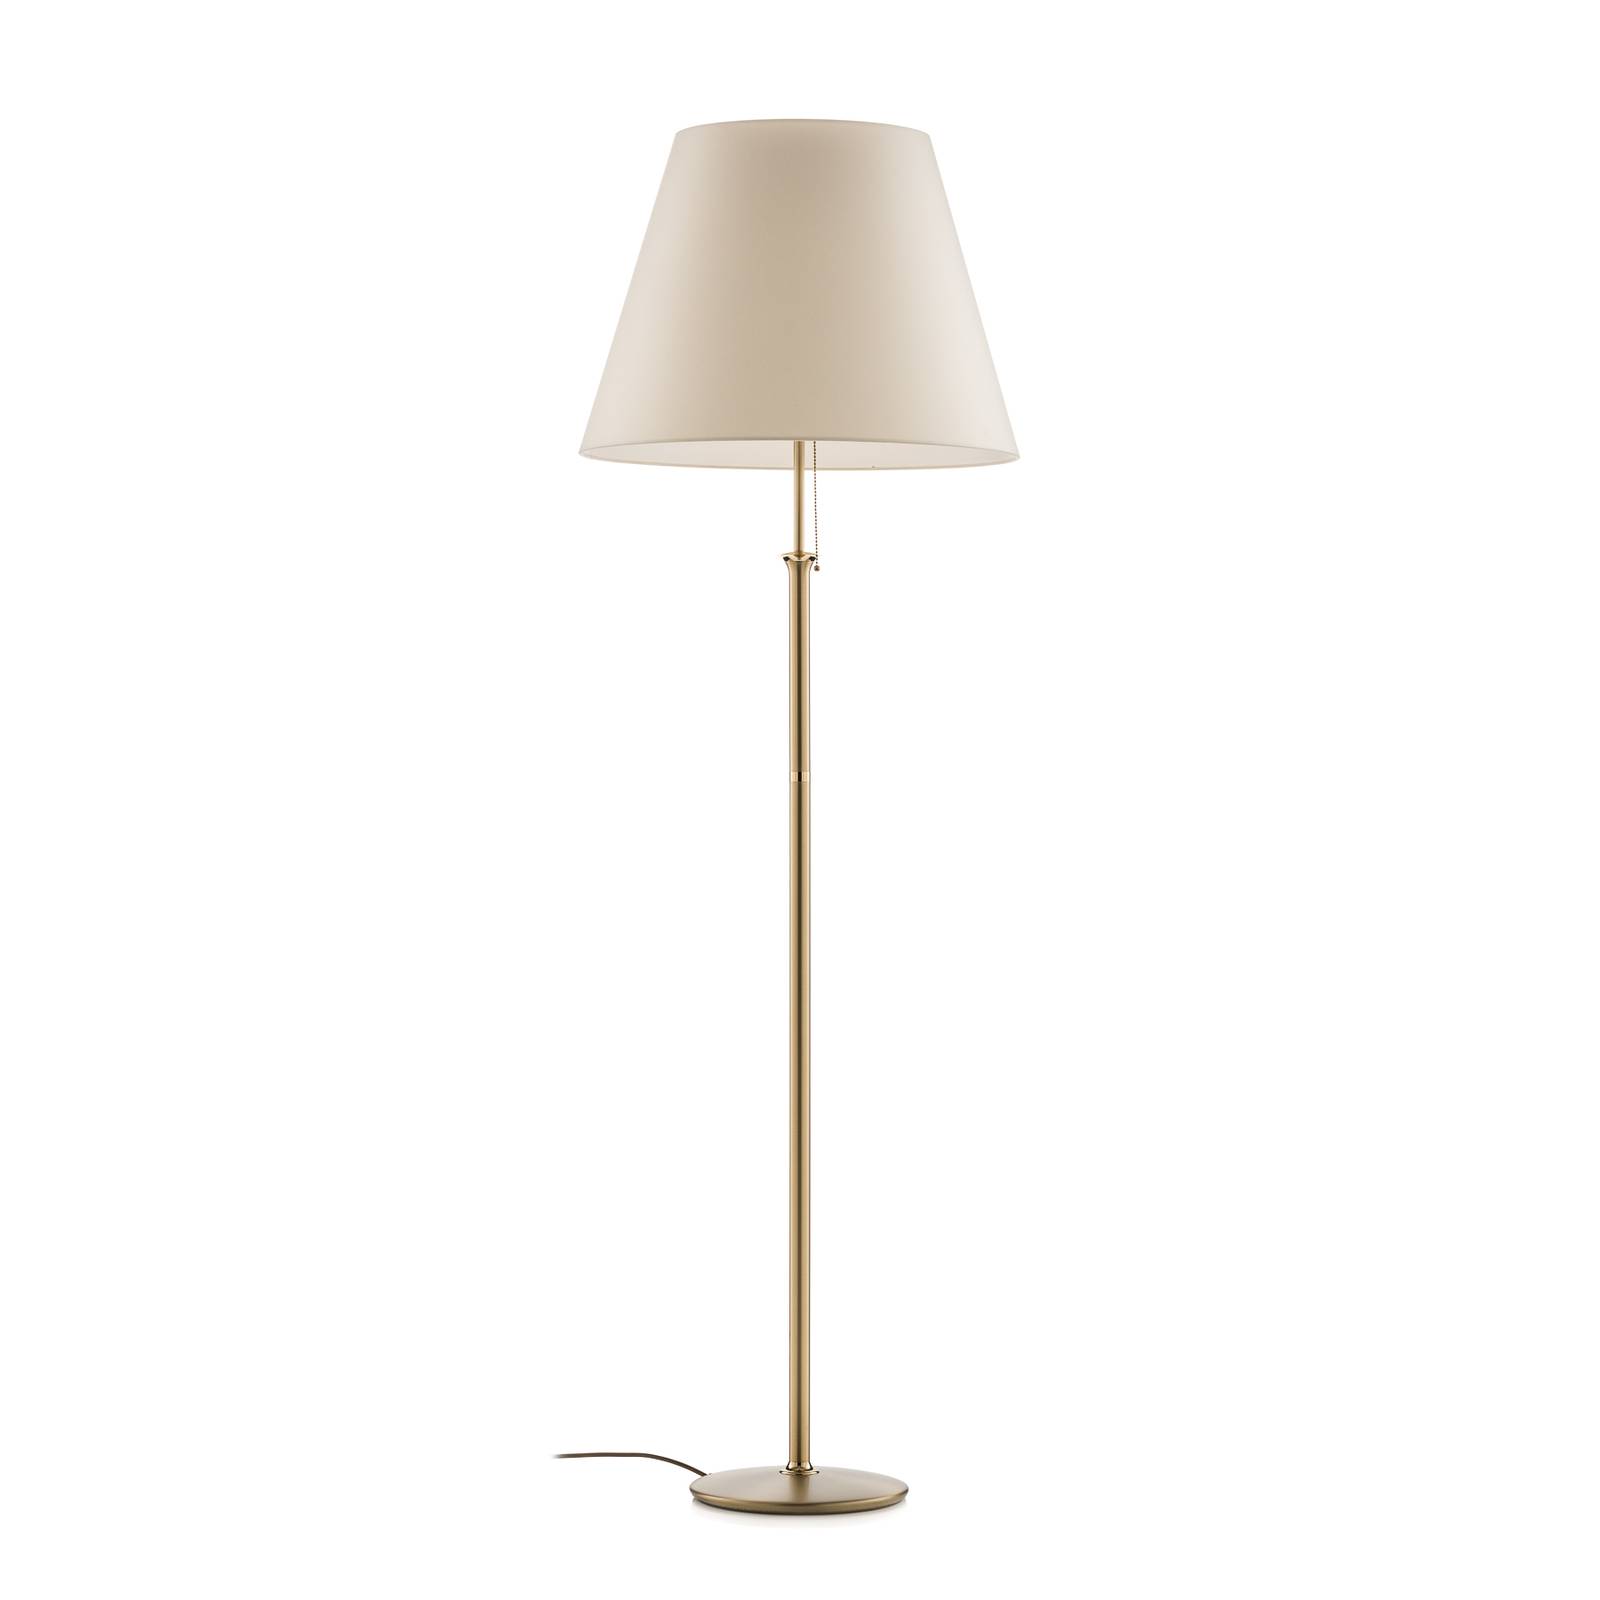 Image of Lampadaire Royce avec lampe de plafond crème 4011868356518